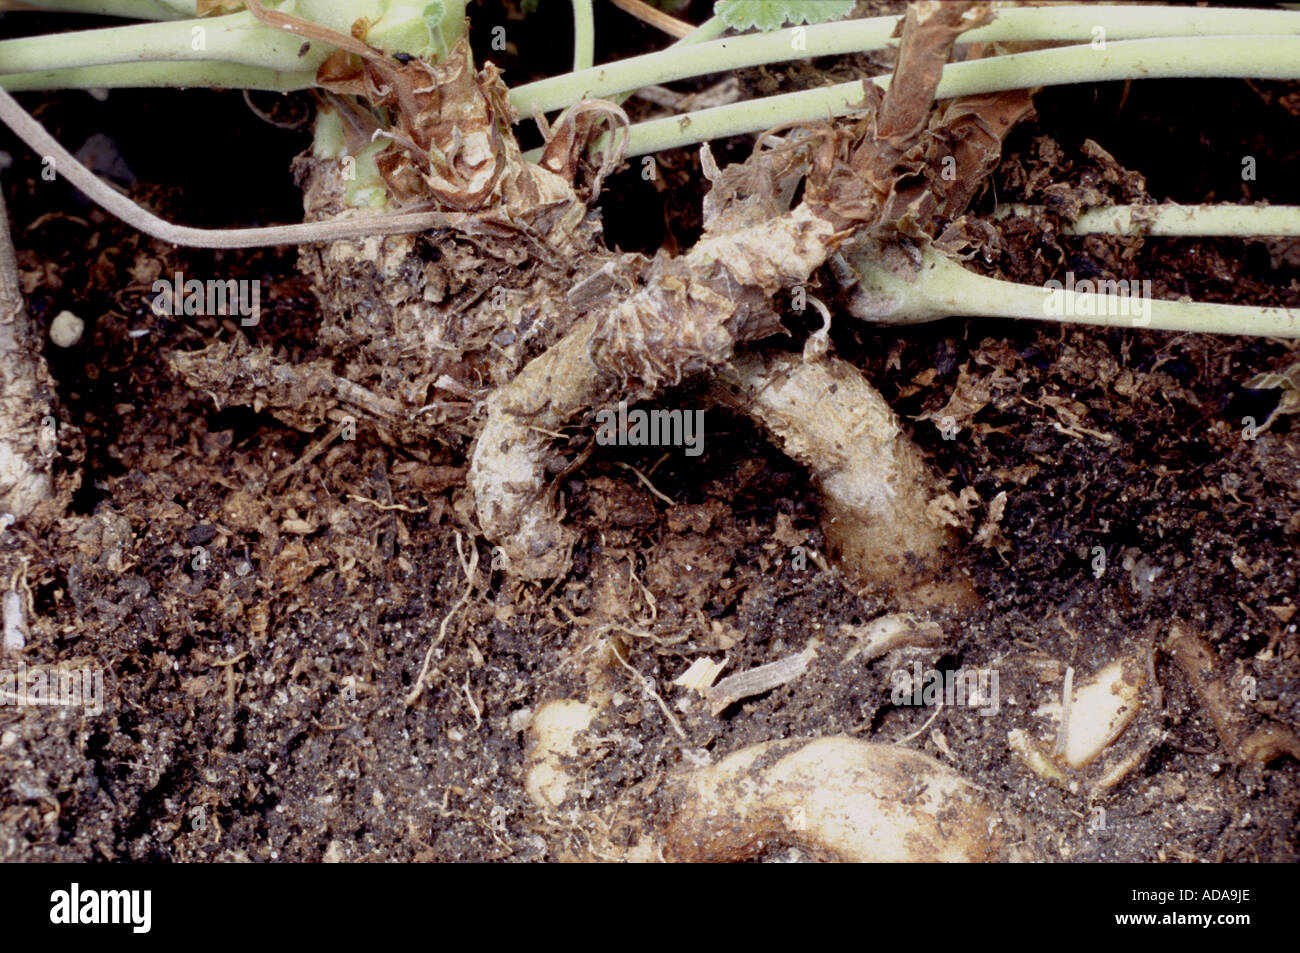 Geranie (Pelargonium Sidoides), Wurzeln aus, die das Medikament Umckaloabo  hergestellt wird Stockfotografie - Alamy